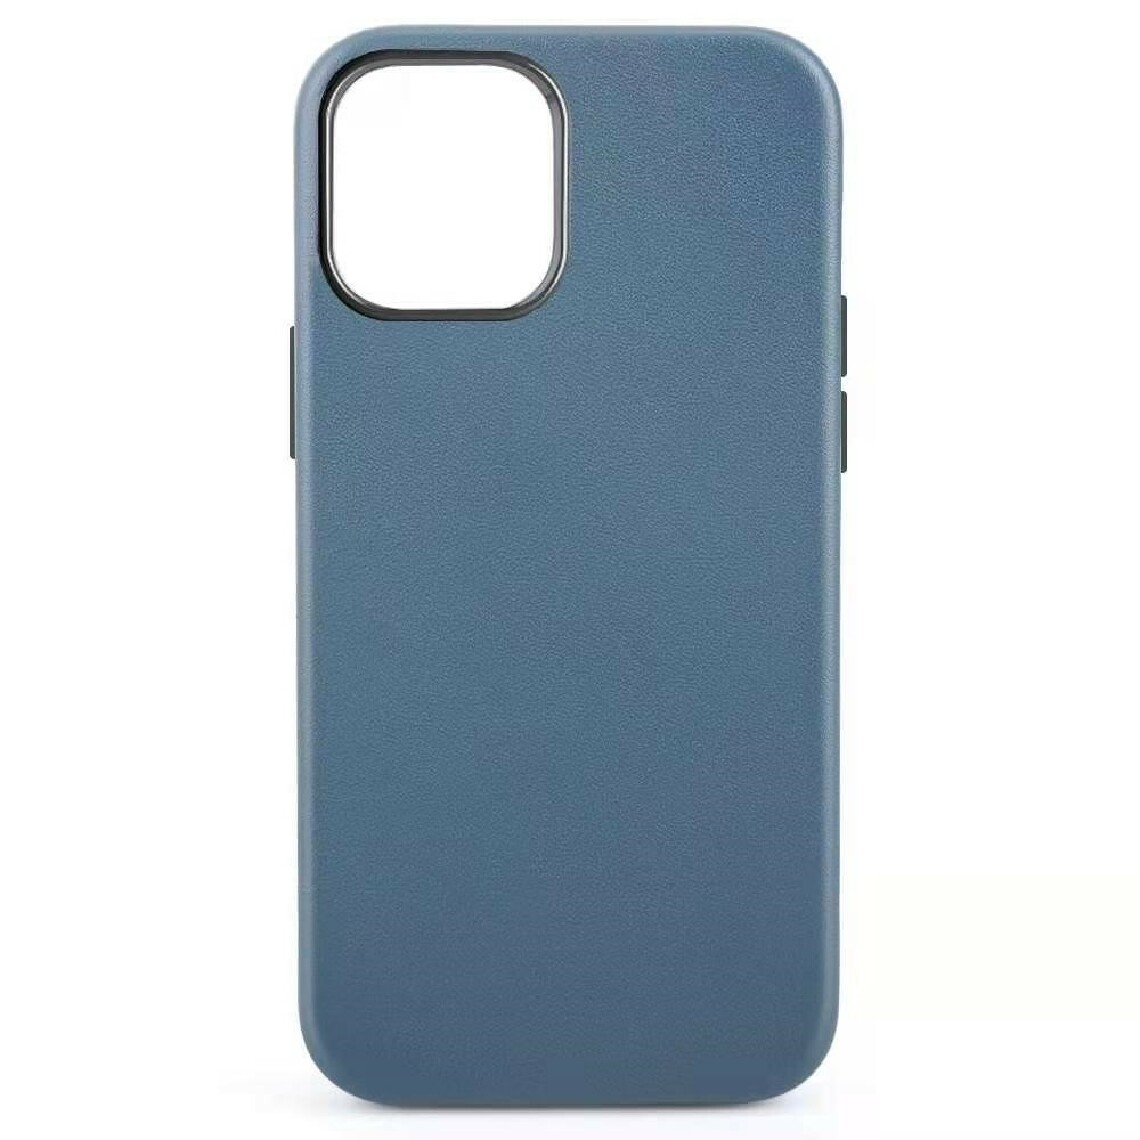 Other - Coque en TPU + cuir véritable revêtement magnétique magsafe bleu pour votre Apple iPhone 12 mini - Coque, étui smartphone